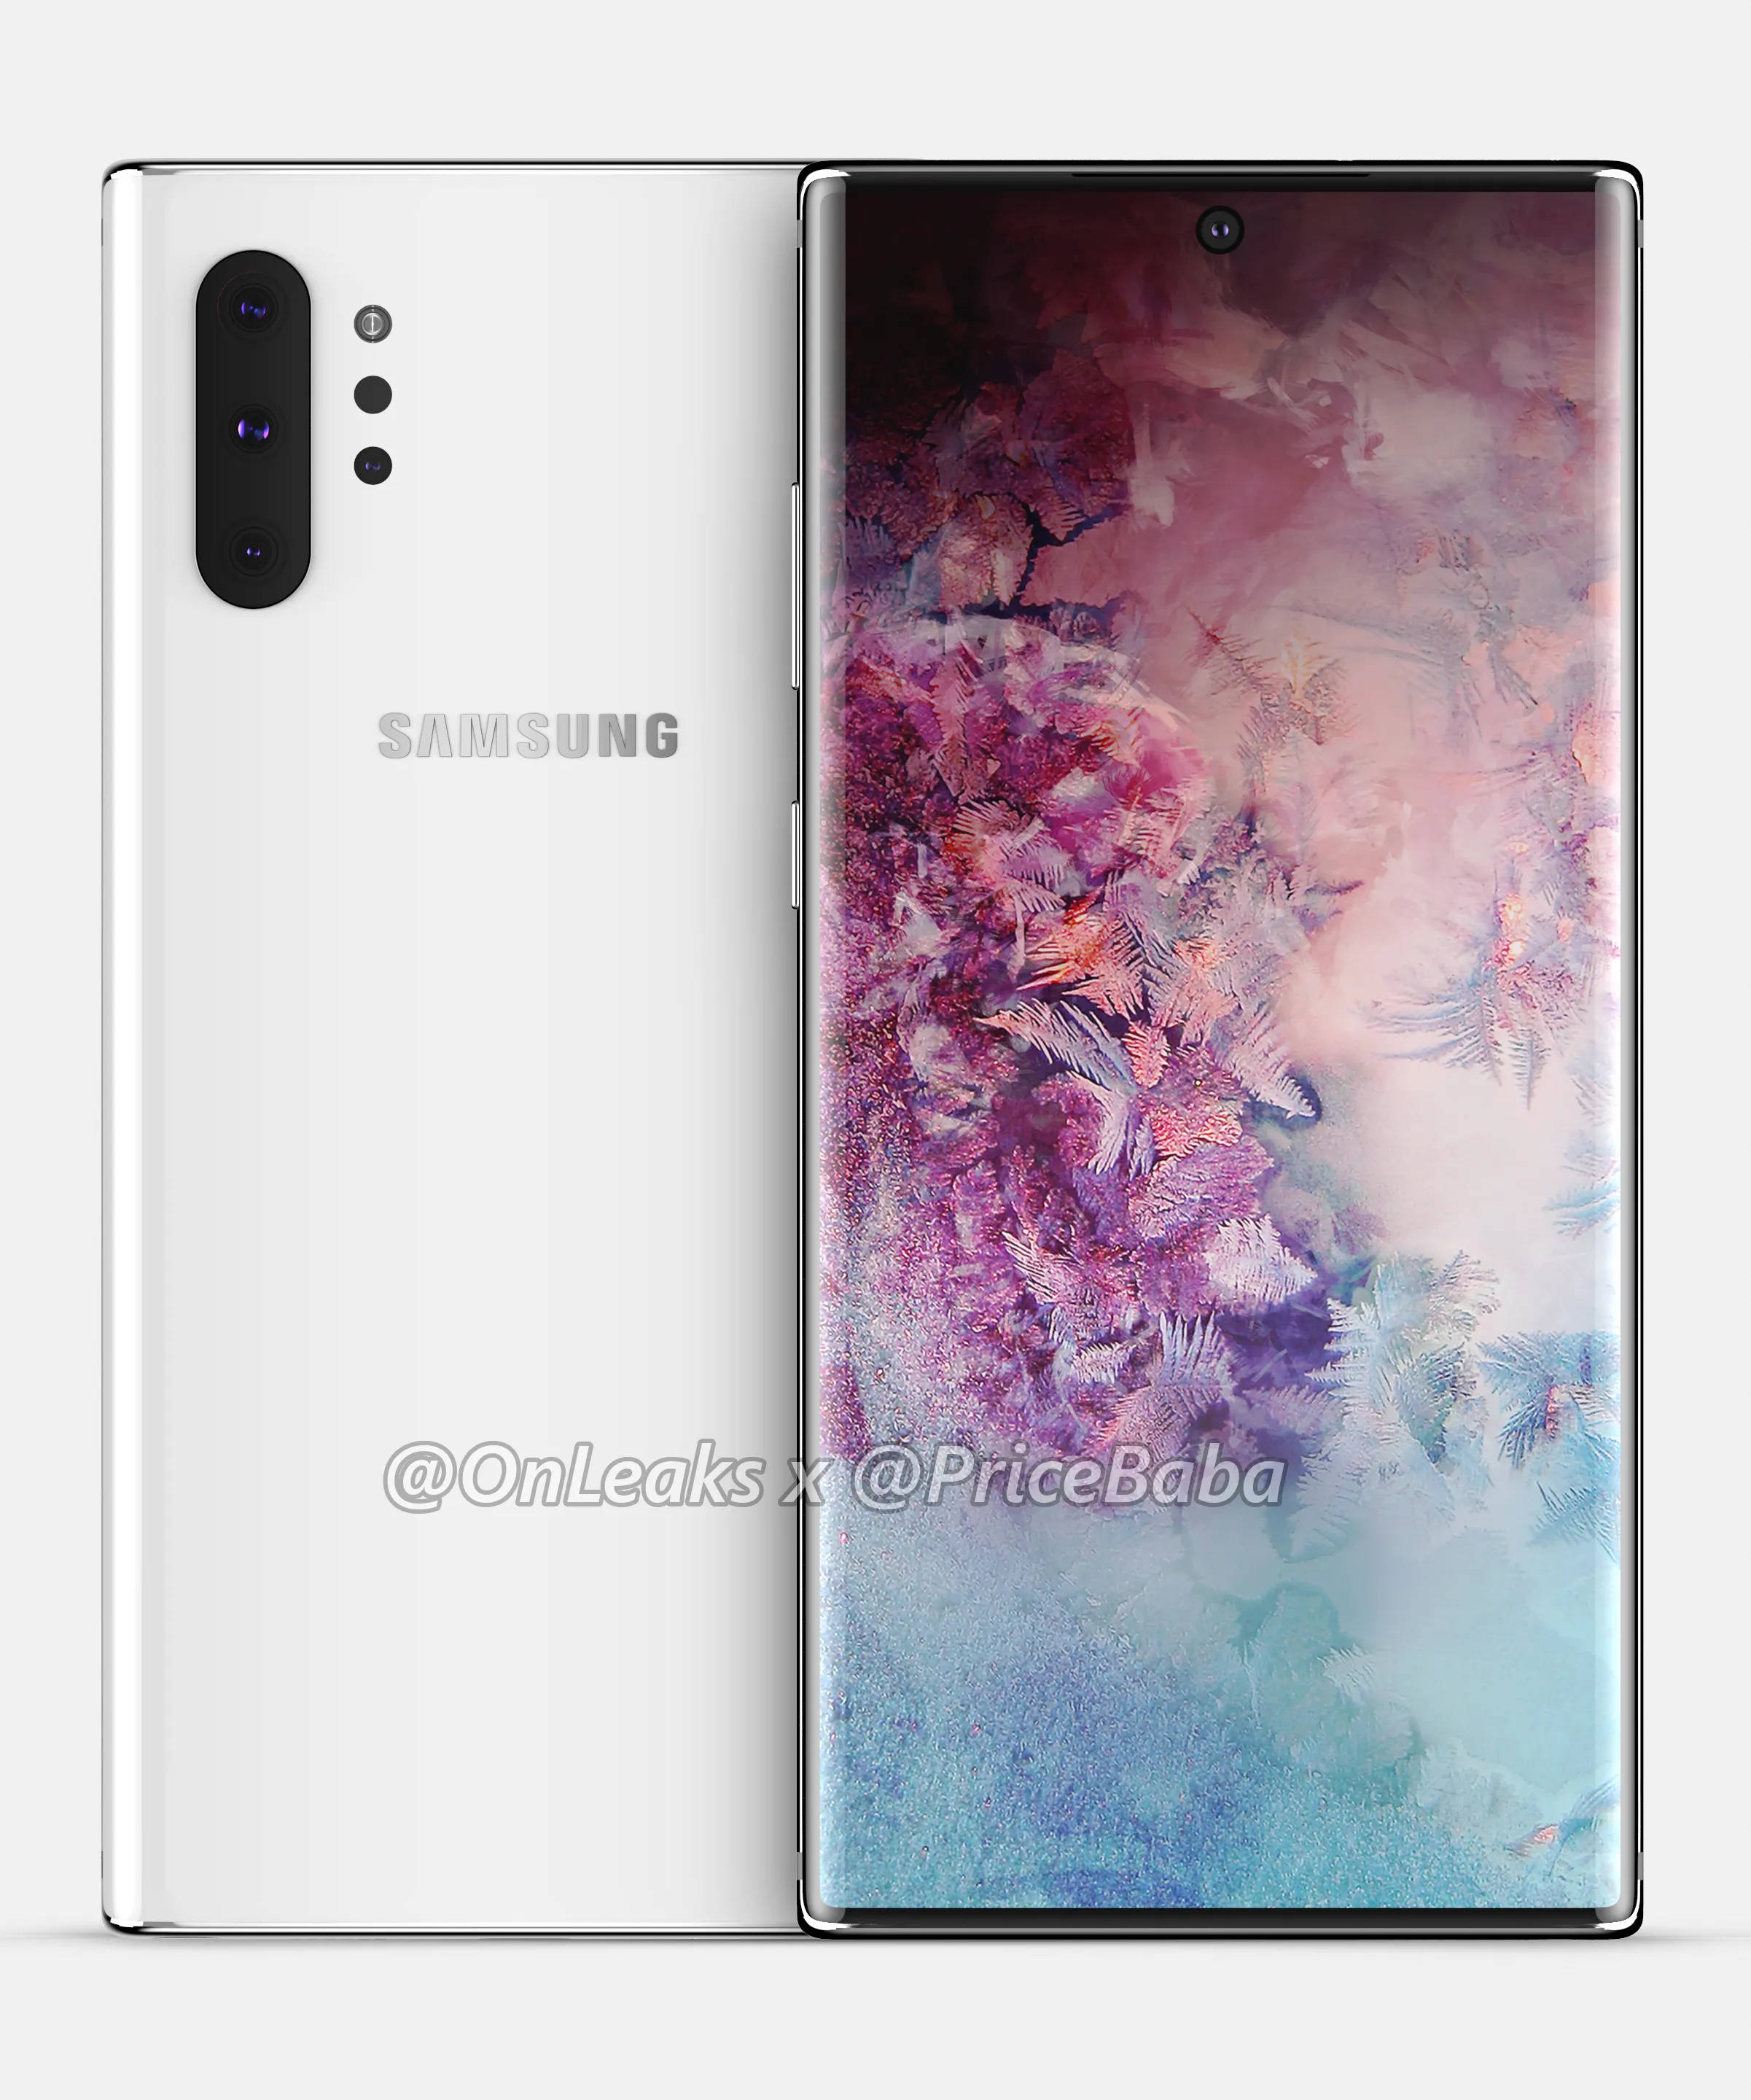 Samsung Galaxy Note 10 Pro rendery Onleaks przecieki wycieki plotki kiedy premiera specyfikacja techniczna